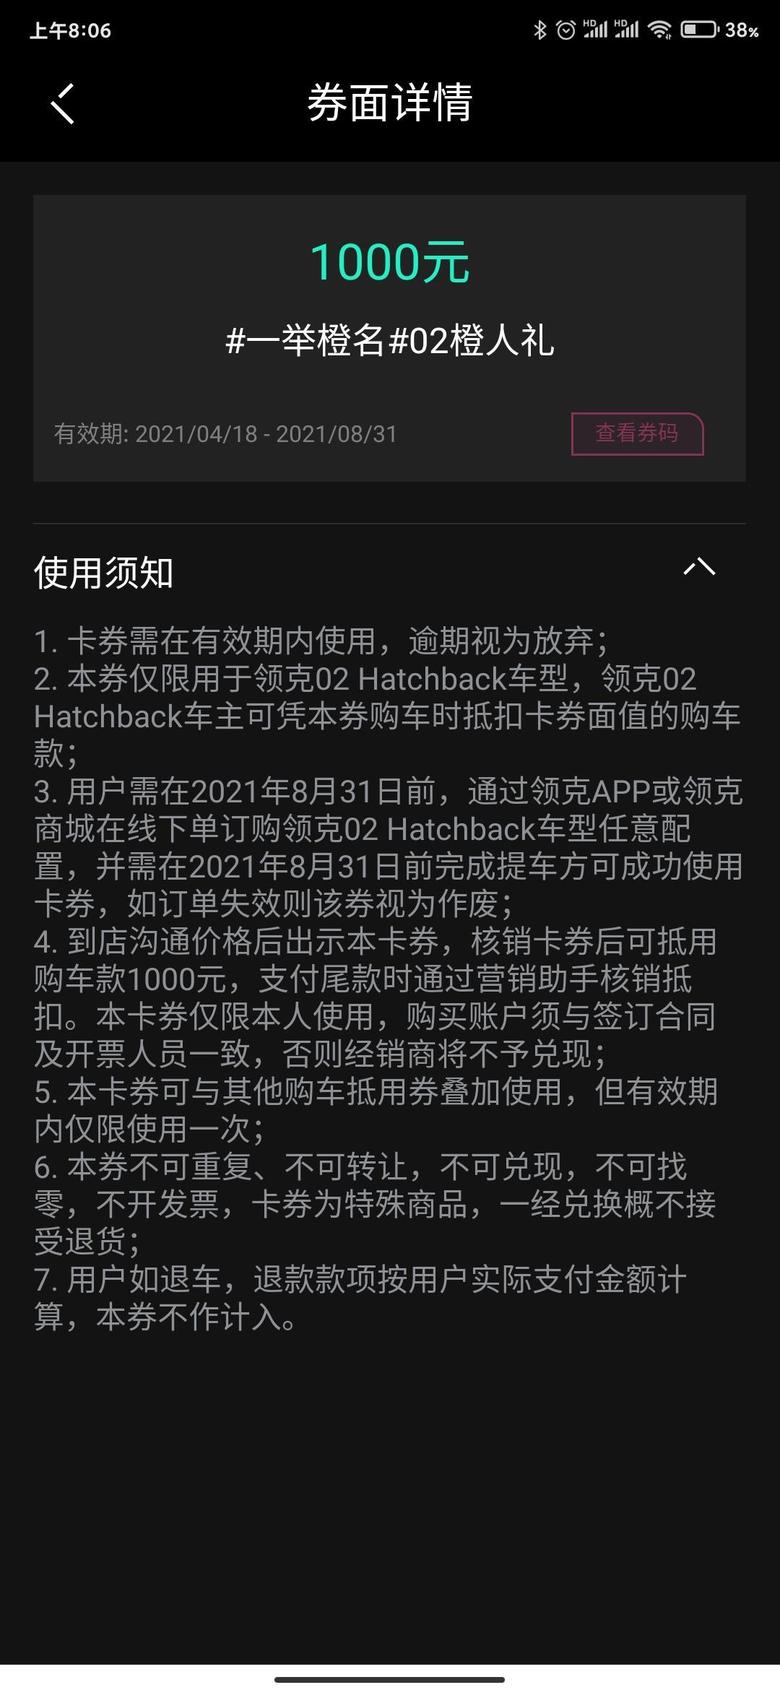 领克02 hatchback 这算是给盲订用户的五千优惠吗？岂不是20万以内能落地了！